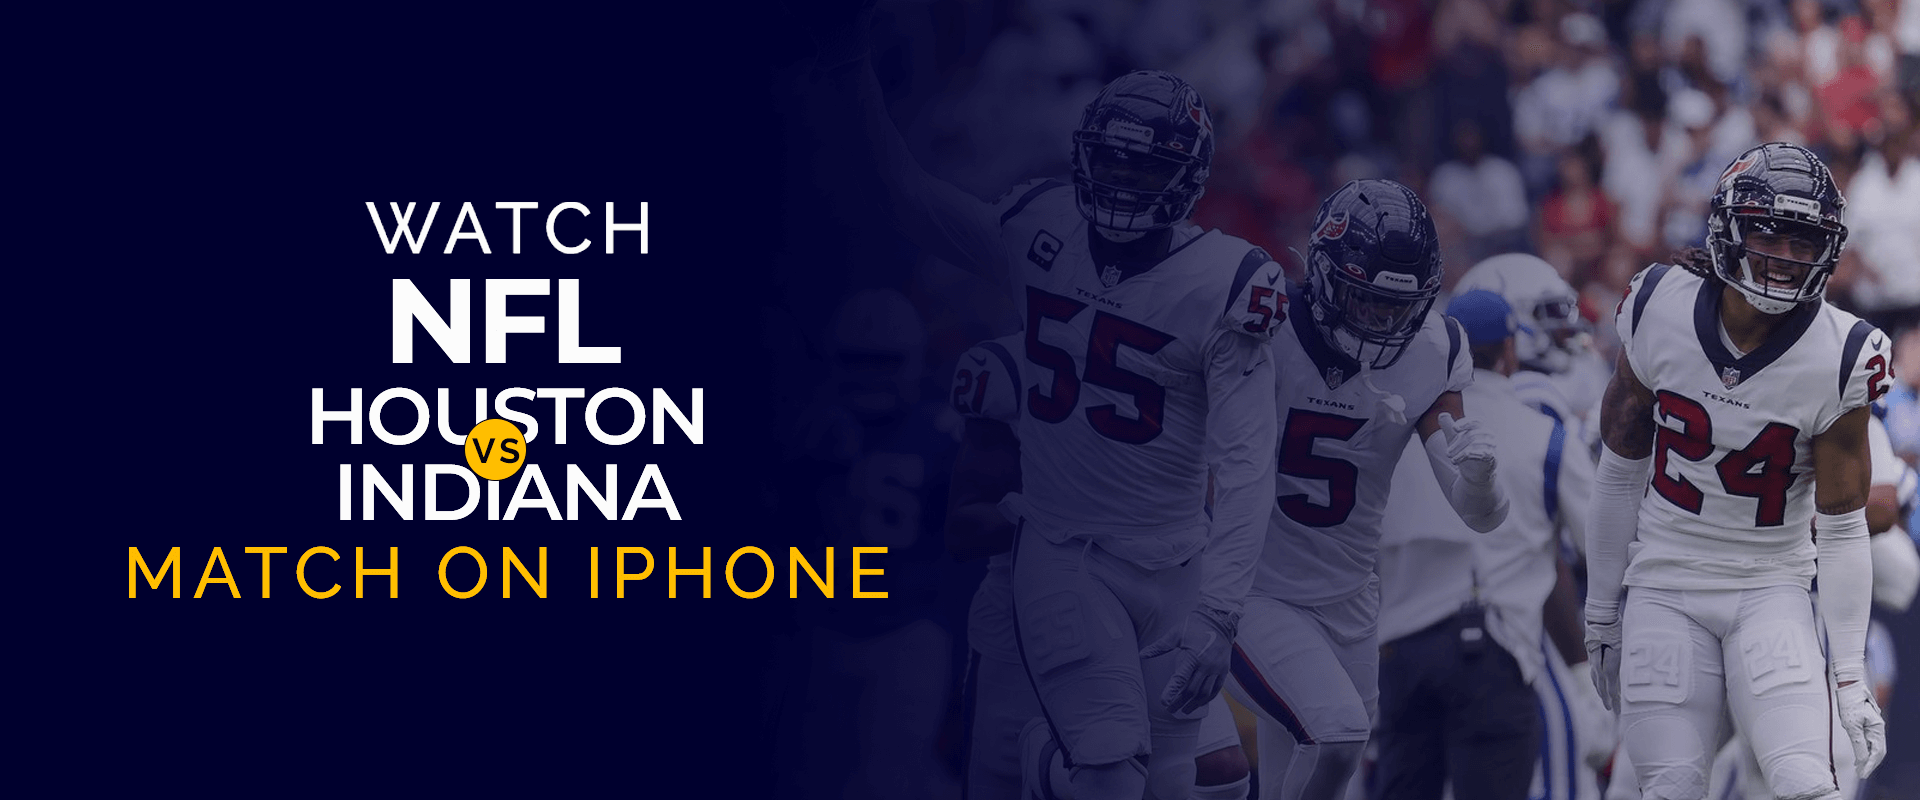 شاهد مباراة NFL Houston vs Indiana على iPhone